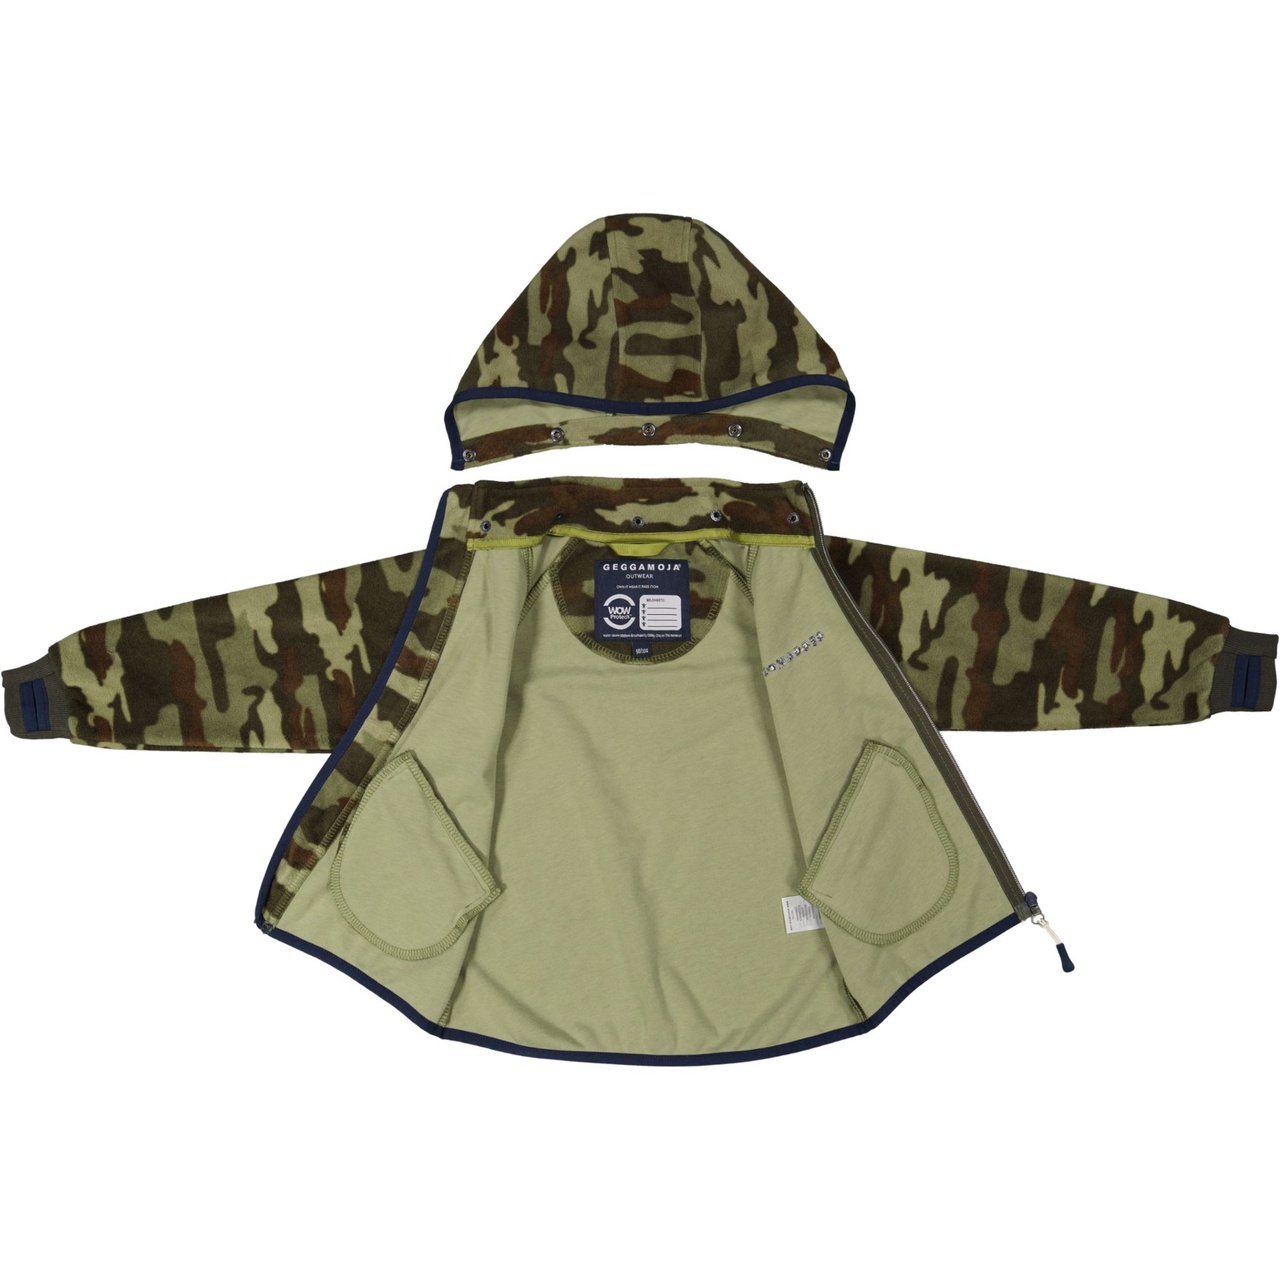 Wind fleece jacket Camouflage 110/116